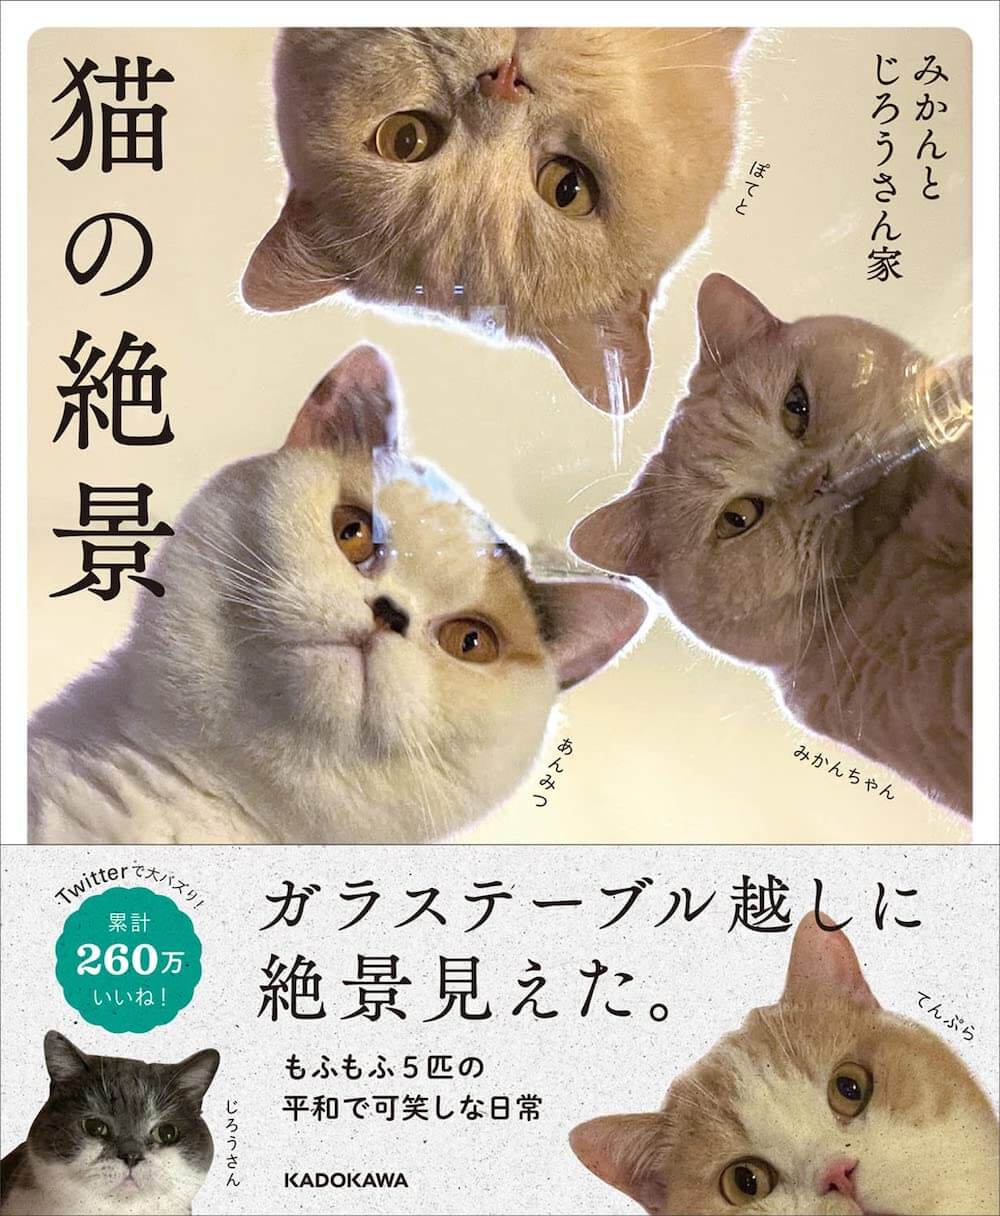 5匹のブリティッシュショートヘアと暮らしている「みかんとじろうさん家」のフォトブック「猫の絶景」表紙イメージ